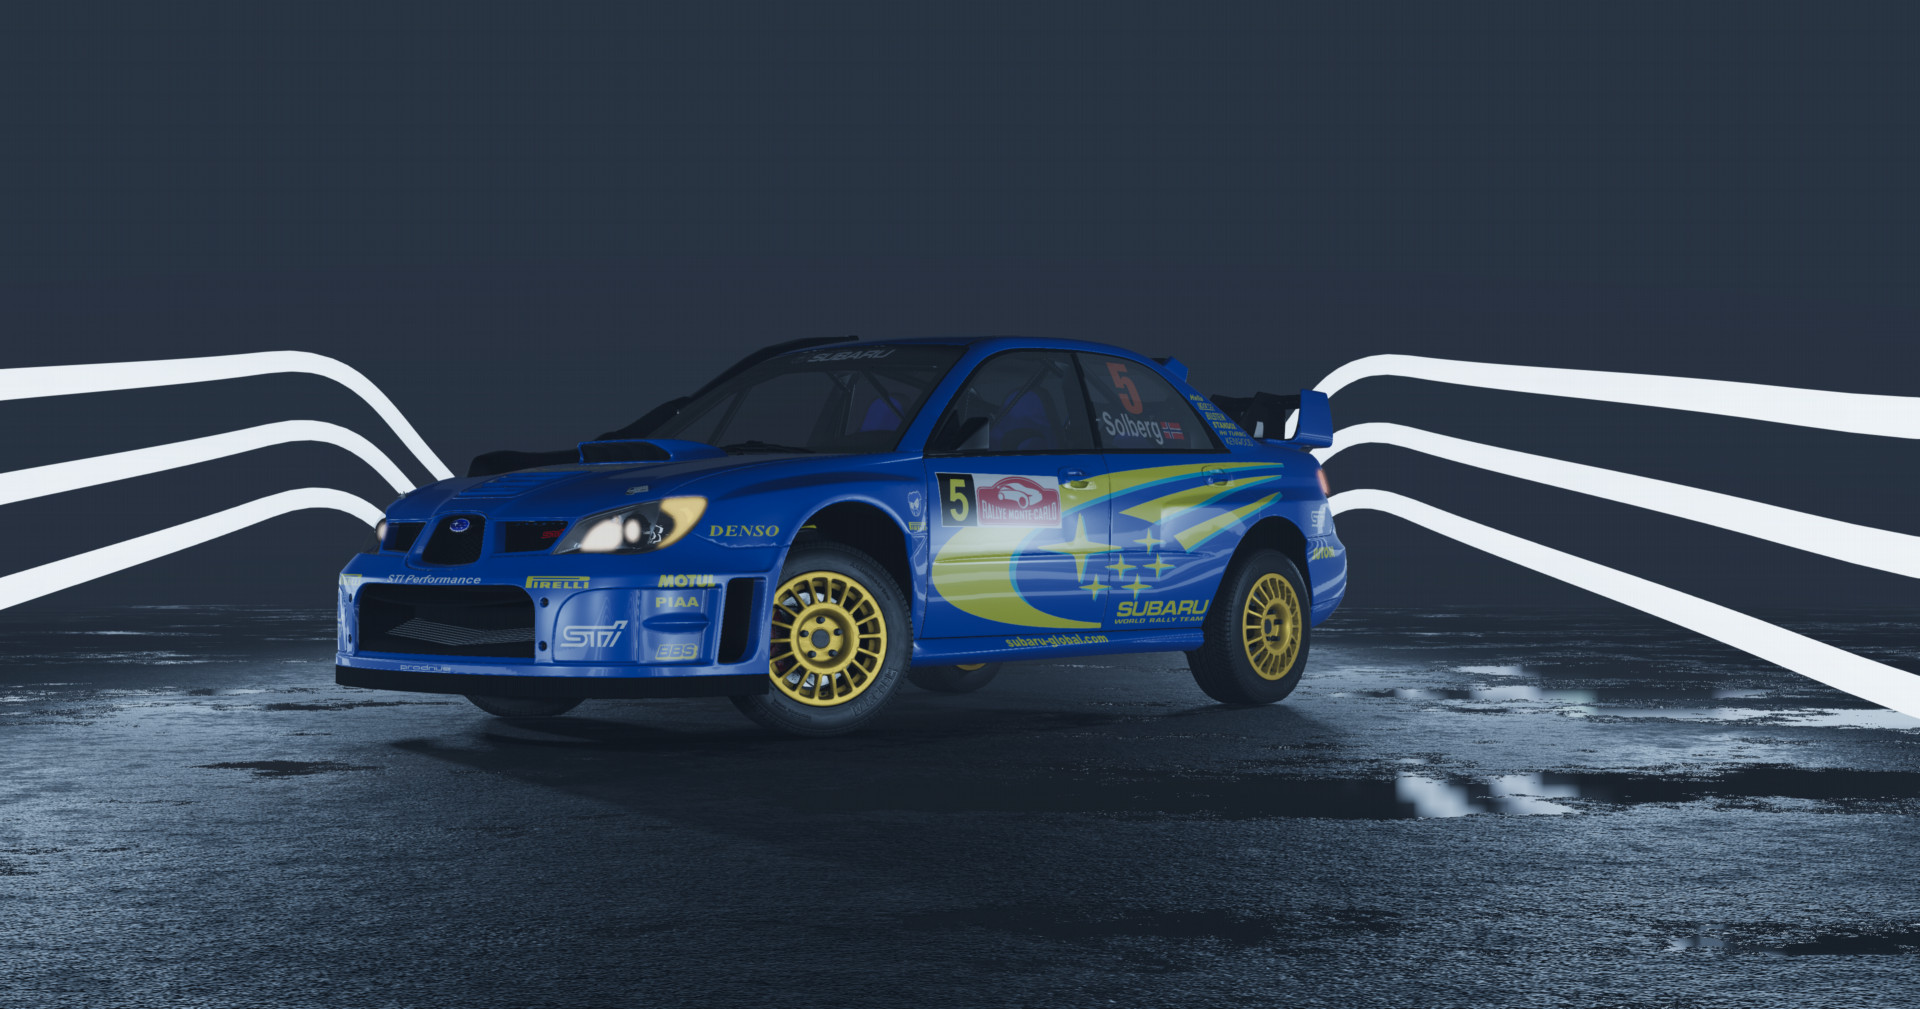 2006 Subaru WRX STI "WRC Rally"